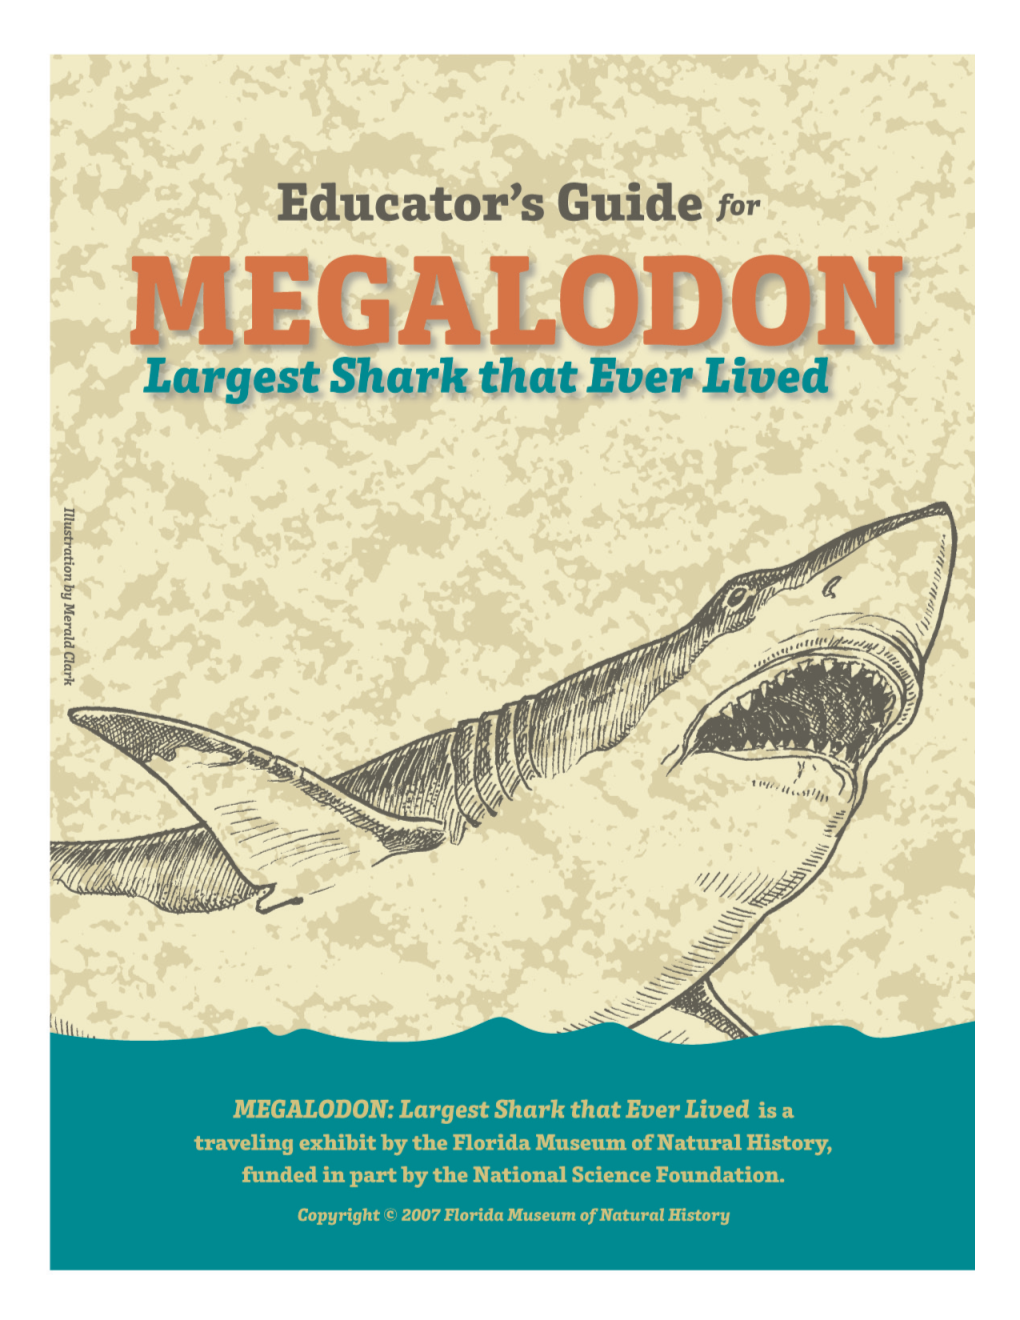 Megalodon Educators' Guide